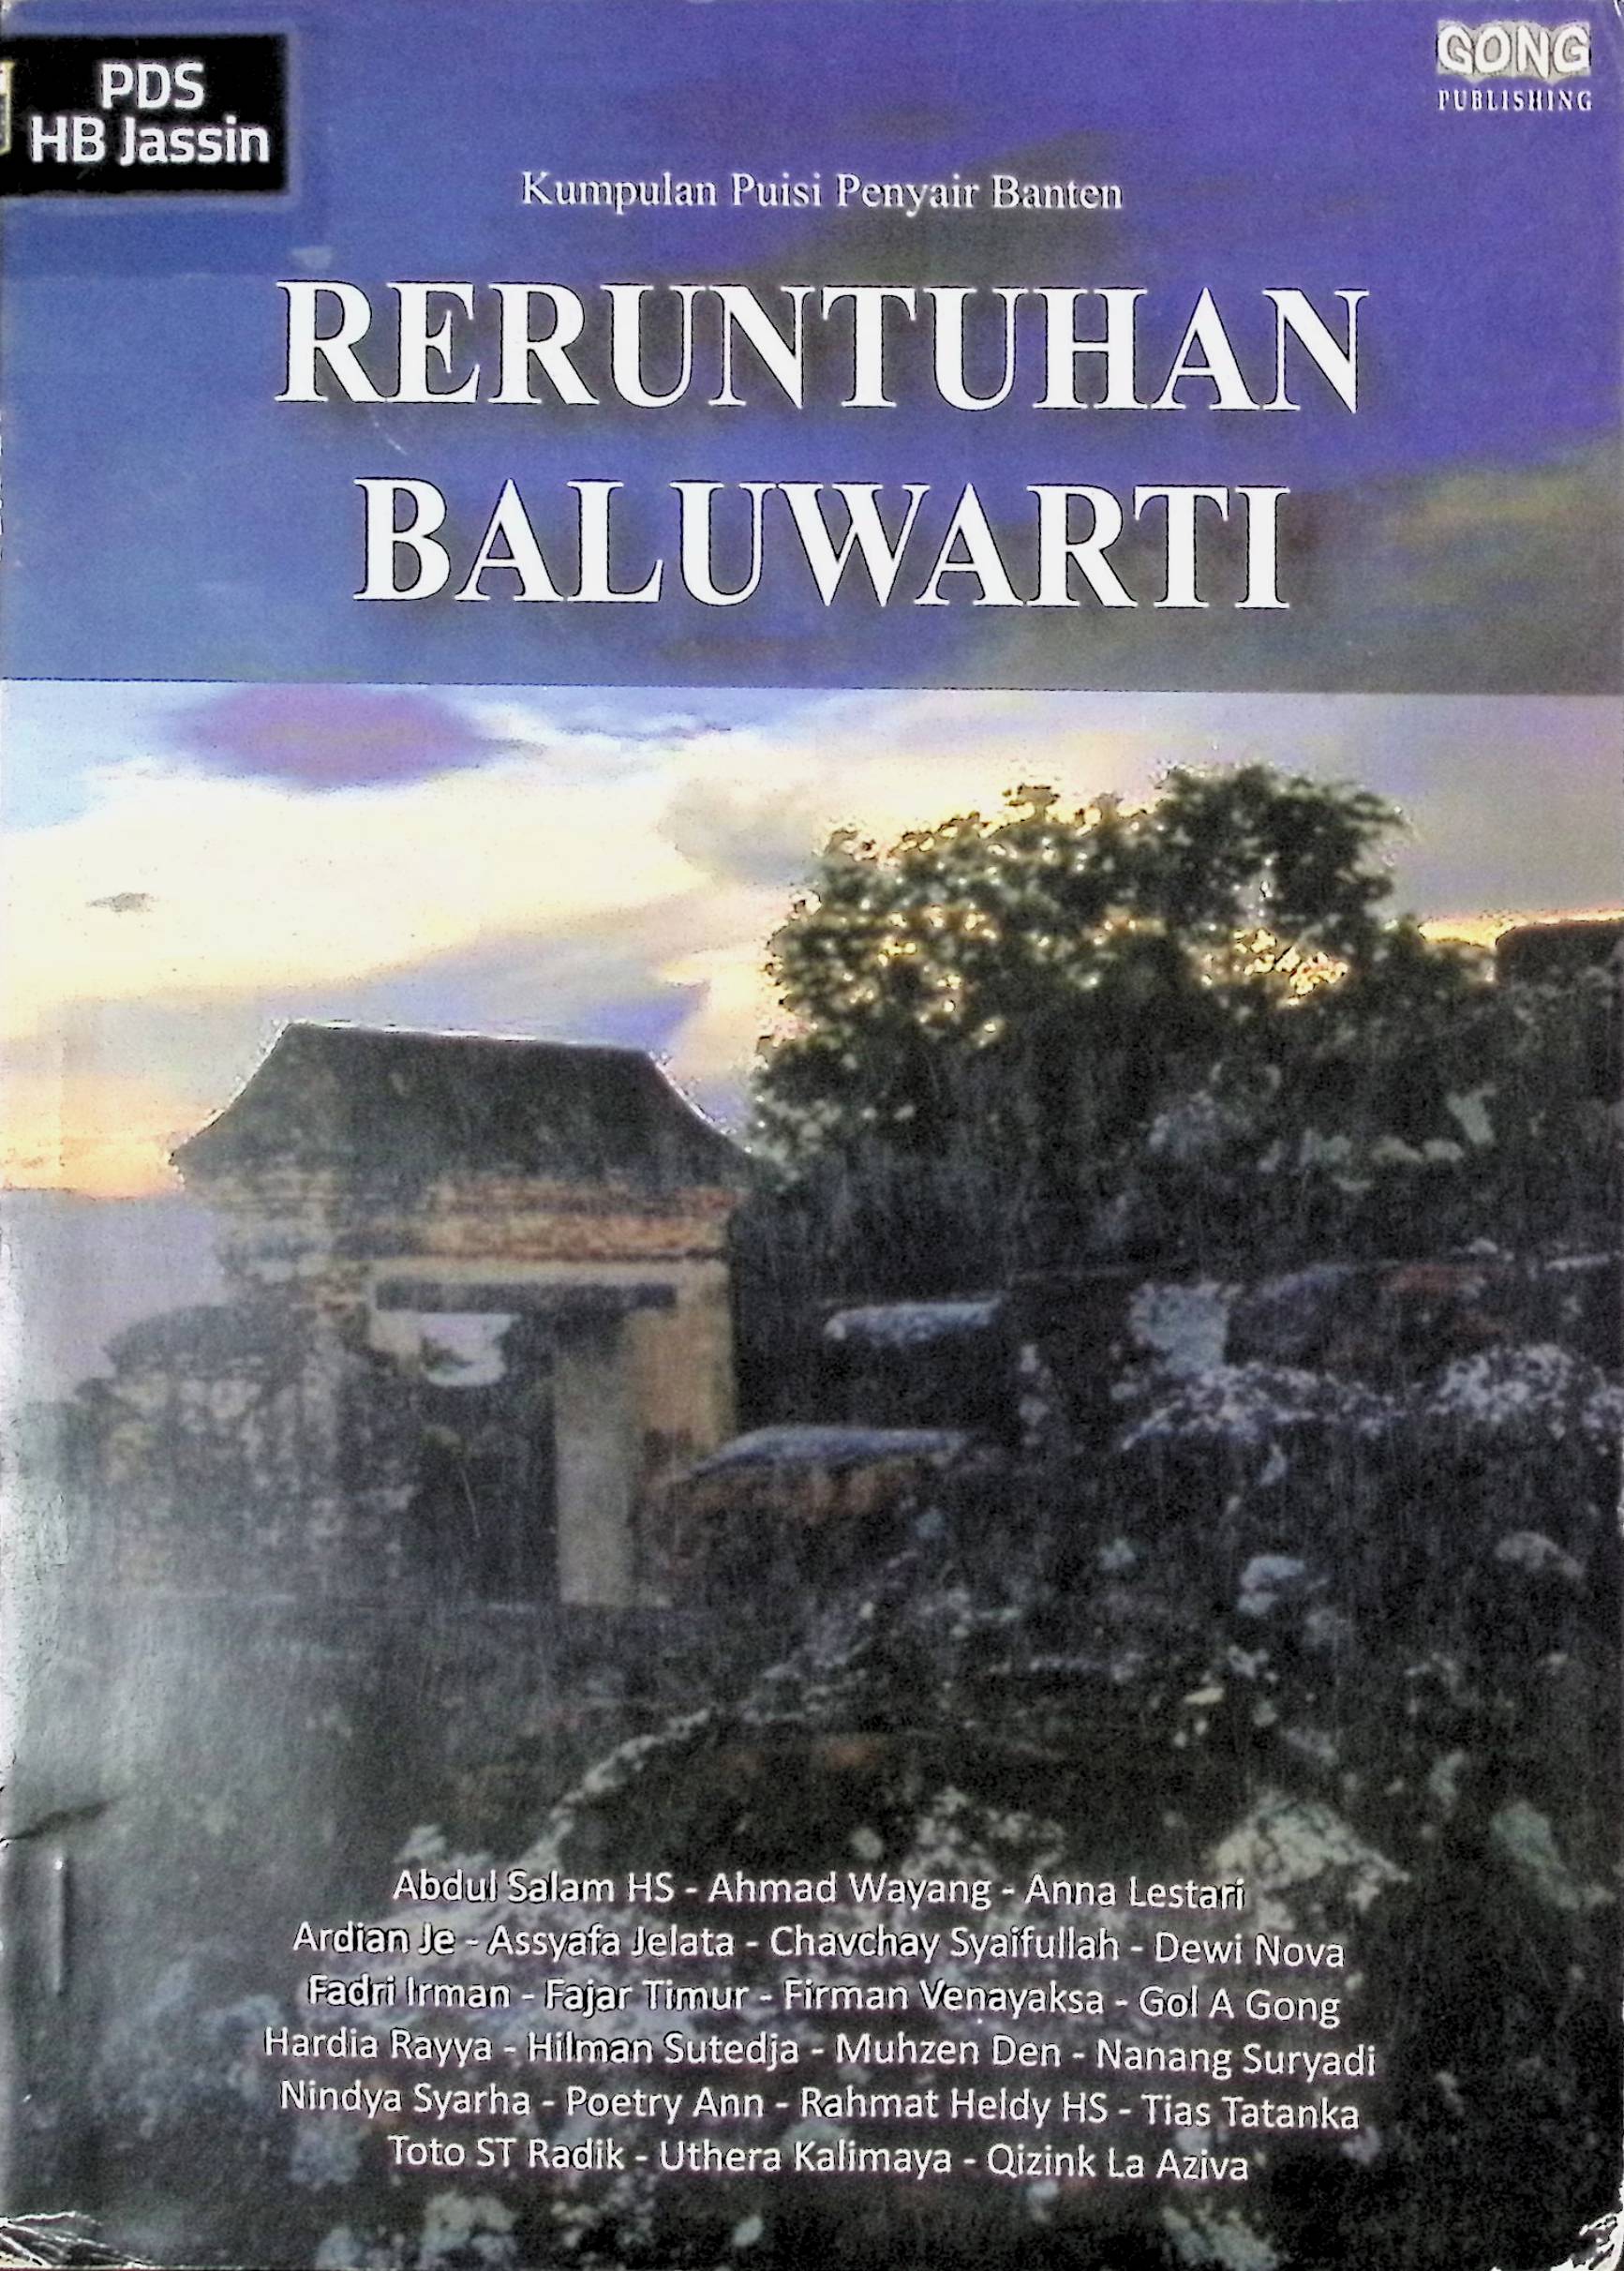 Reruntuhan Baluwarti